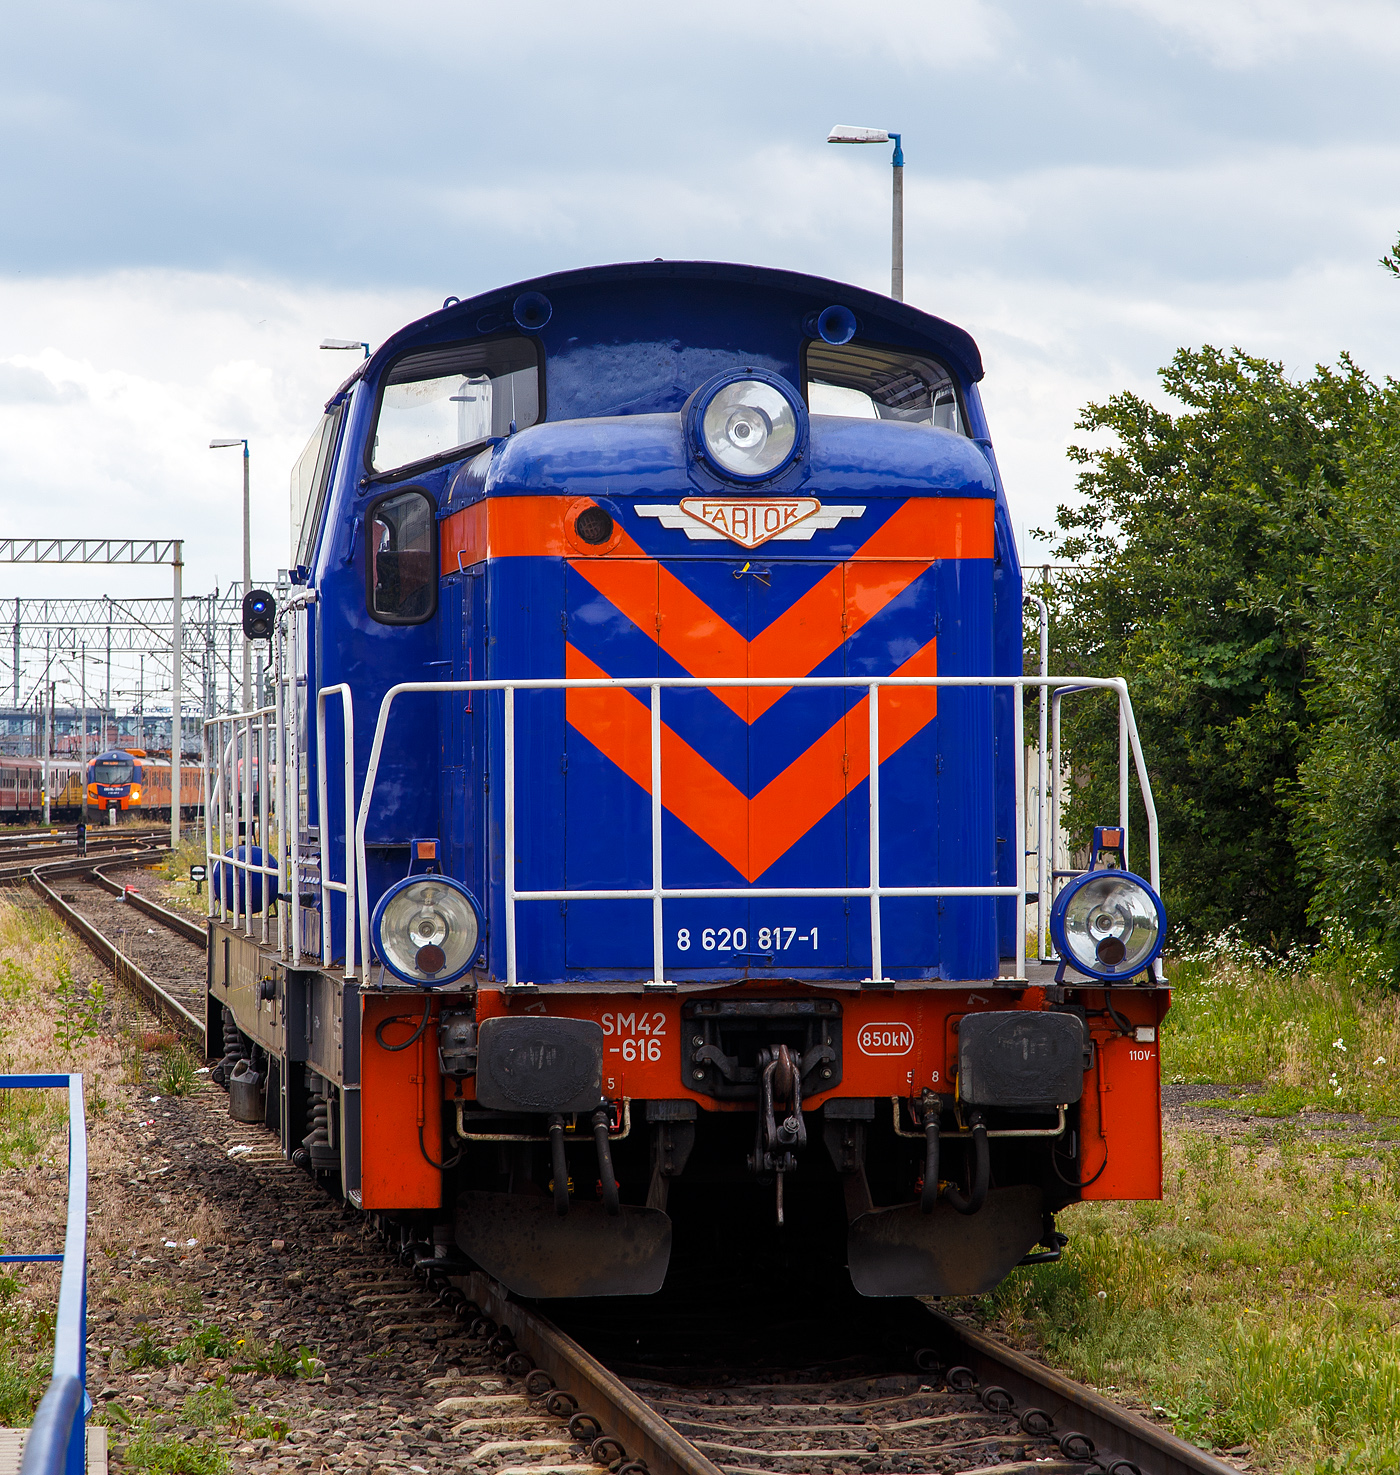 Die SM42-616 (98 51 8 620 817-1 PL PKPIC), eine Fablok 6Da (Typ Ls800E) der PKP Intercity, steht am 25 Juni 2017 beim Hauptbahnhof Posen (Poznań Głwny).

Die Lok wurde 1973 von FABLOK in Chrzanw unter der Fabriknummer 8772 gebaut.